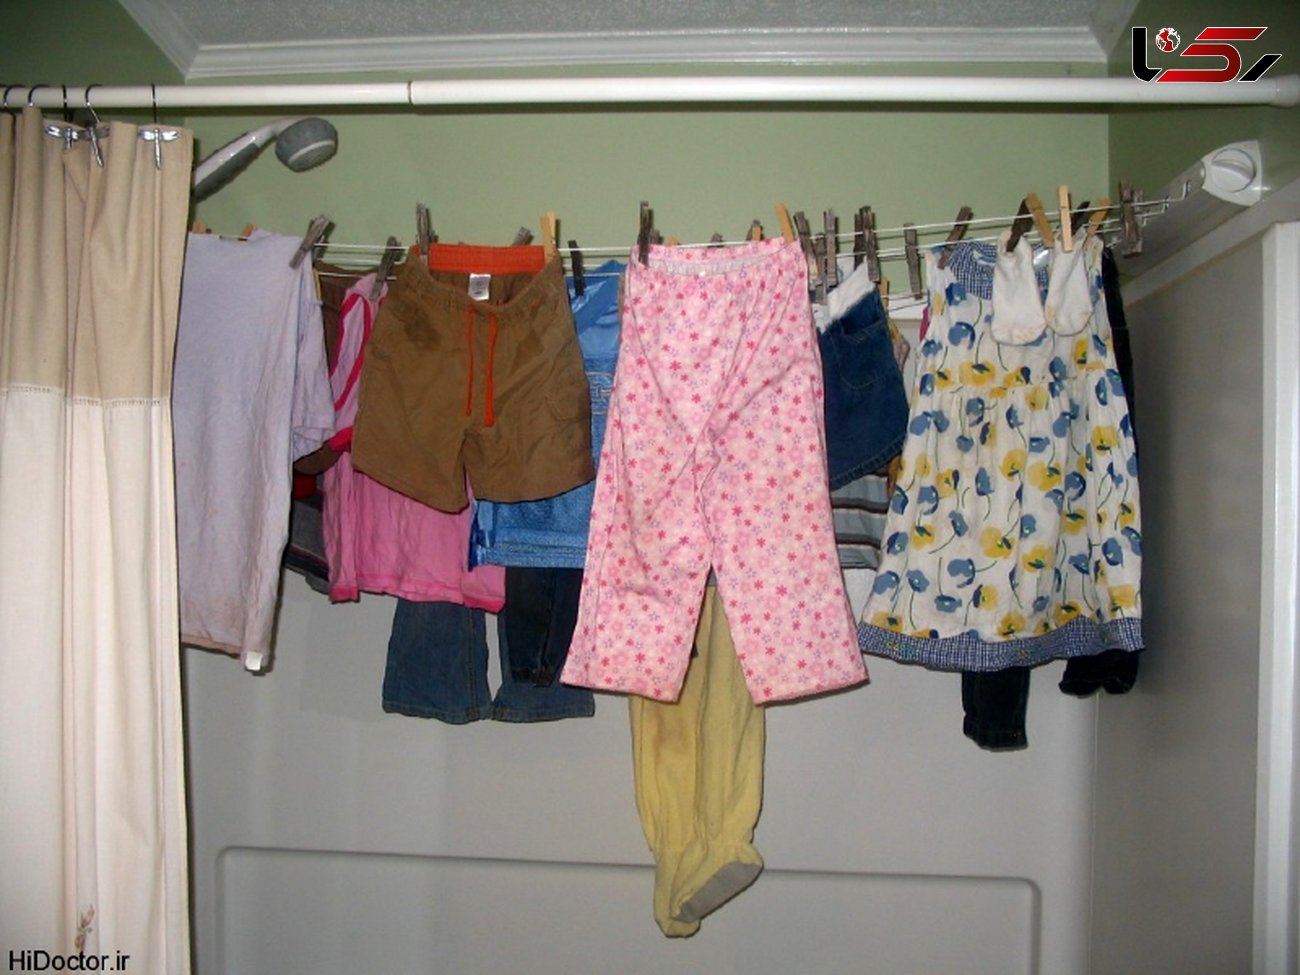 خشک کردن لباس در خانه باعث بروز این بیماری ها می شود!